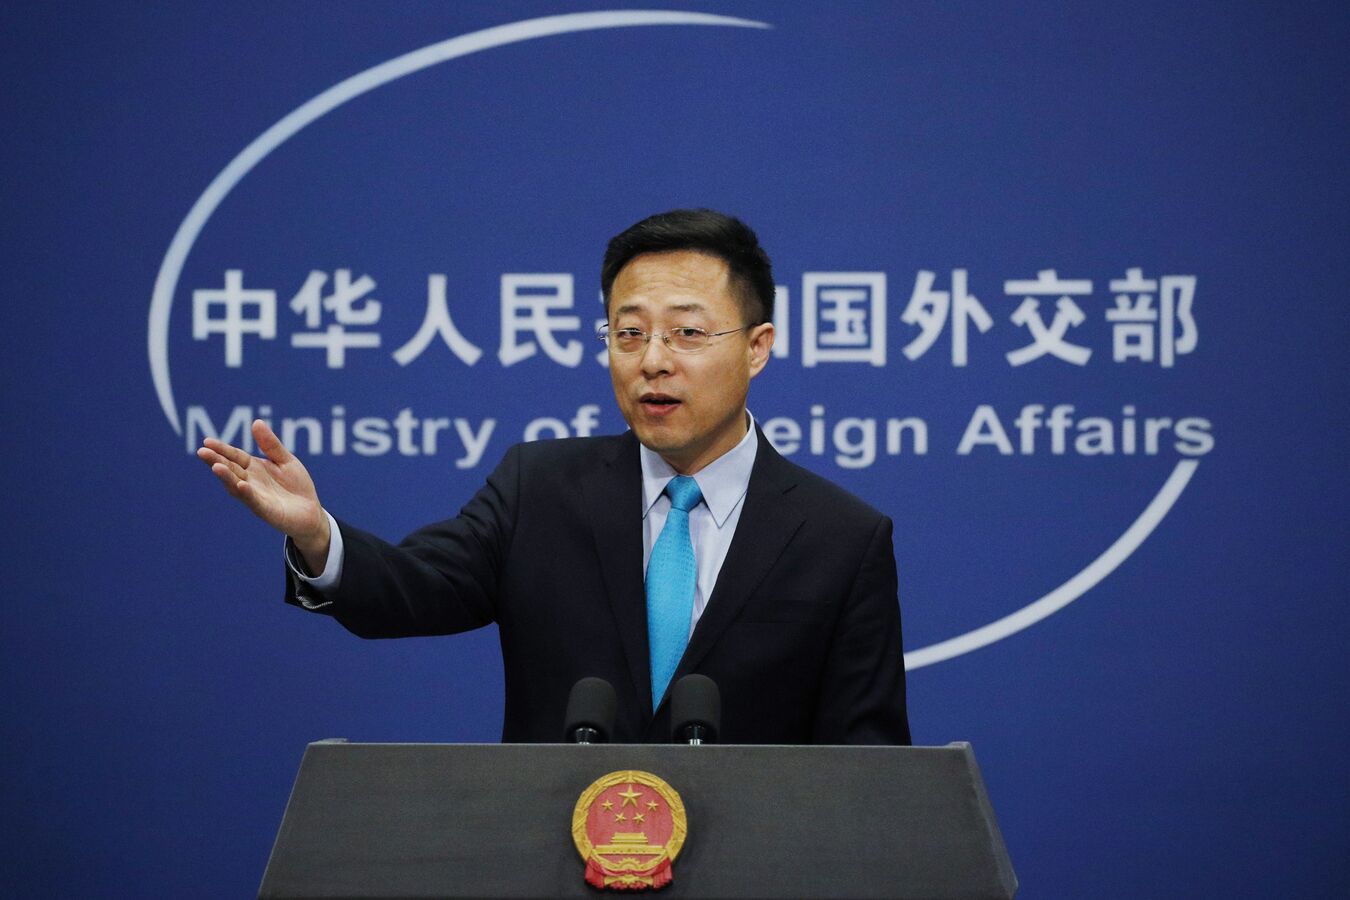 الصين تطالب ليتوانيا "بالتعامل بحذر" مع تايوان